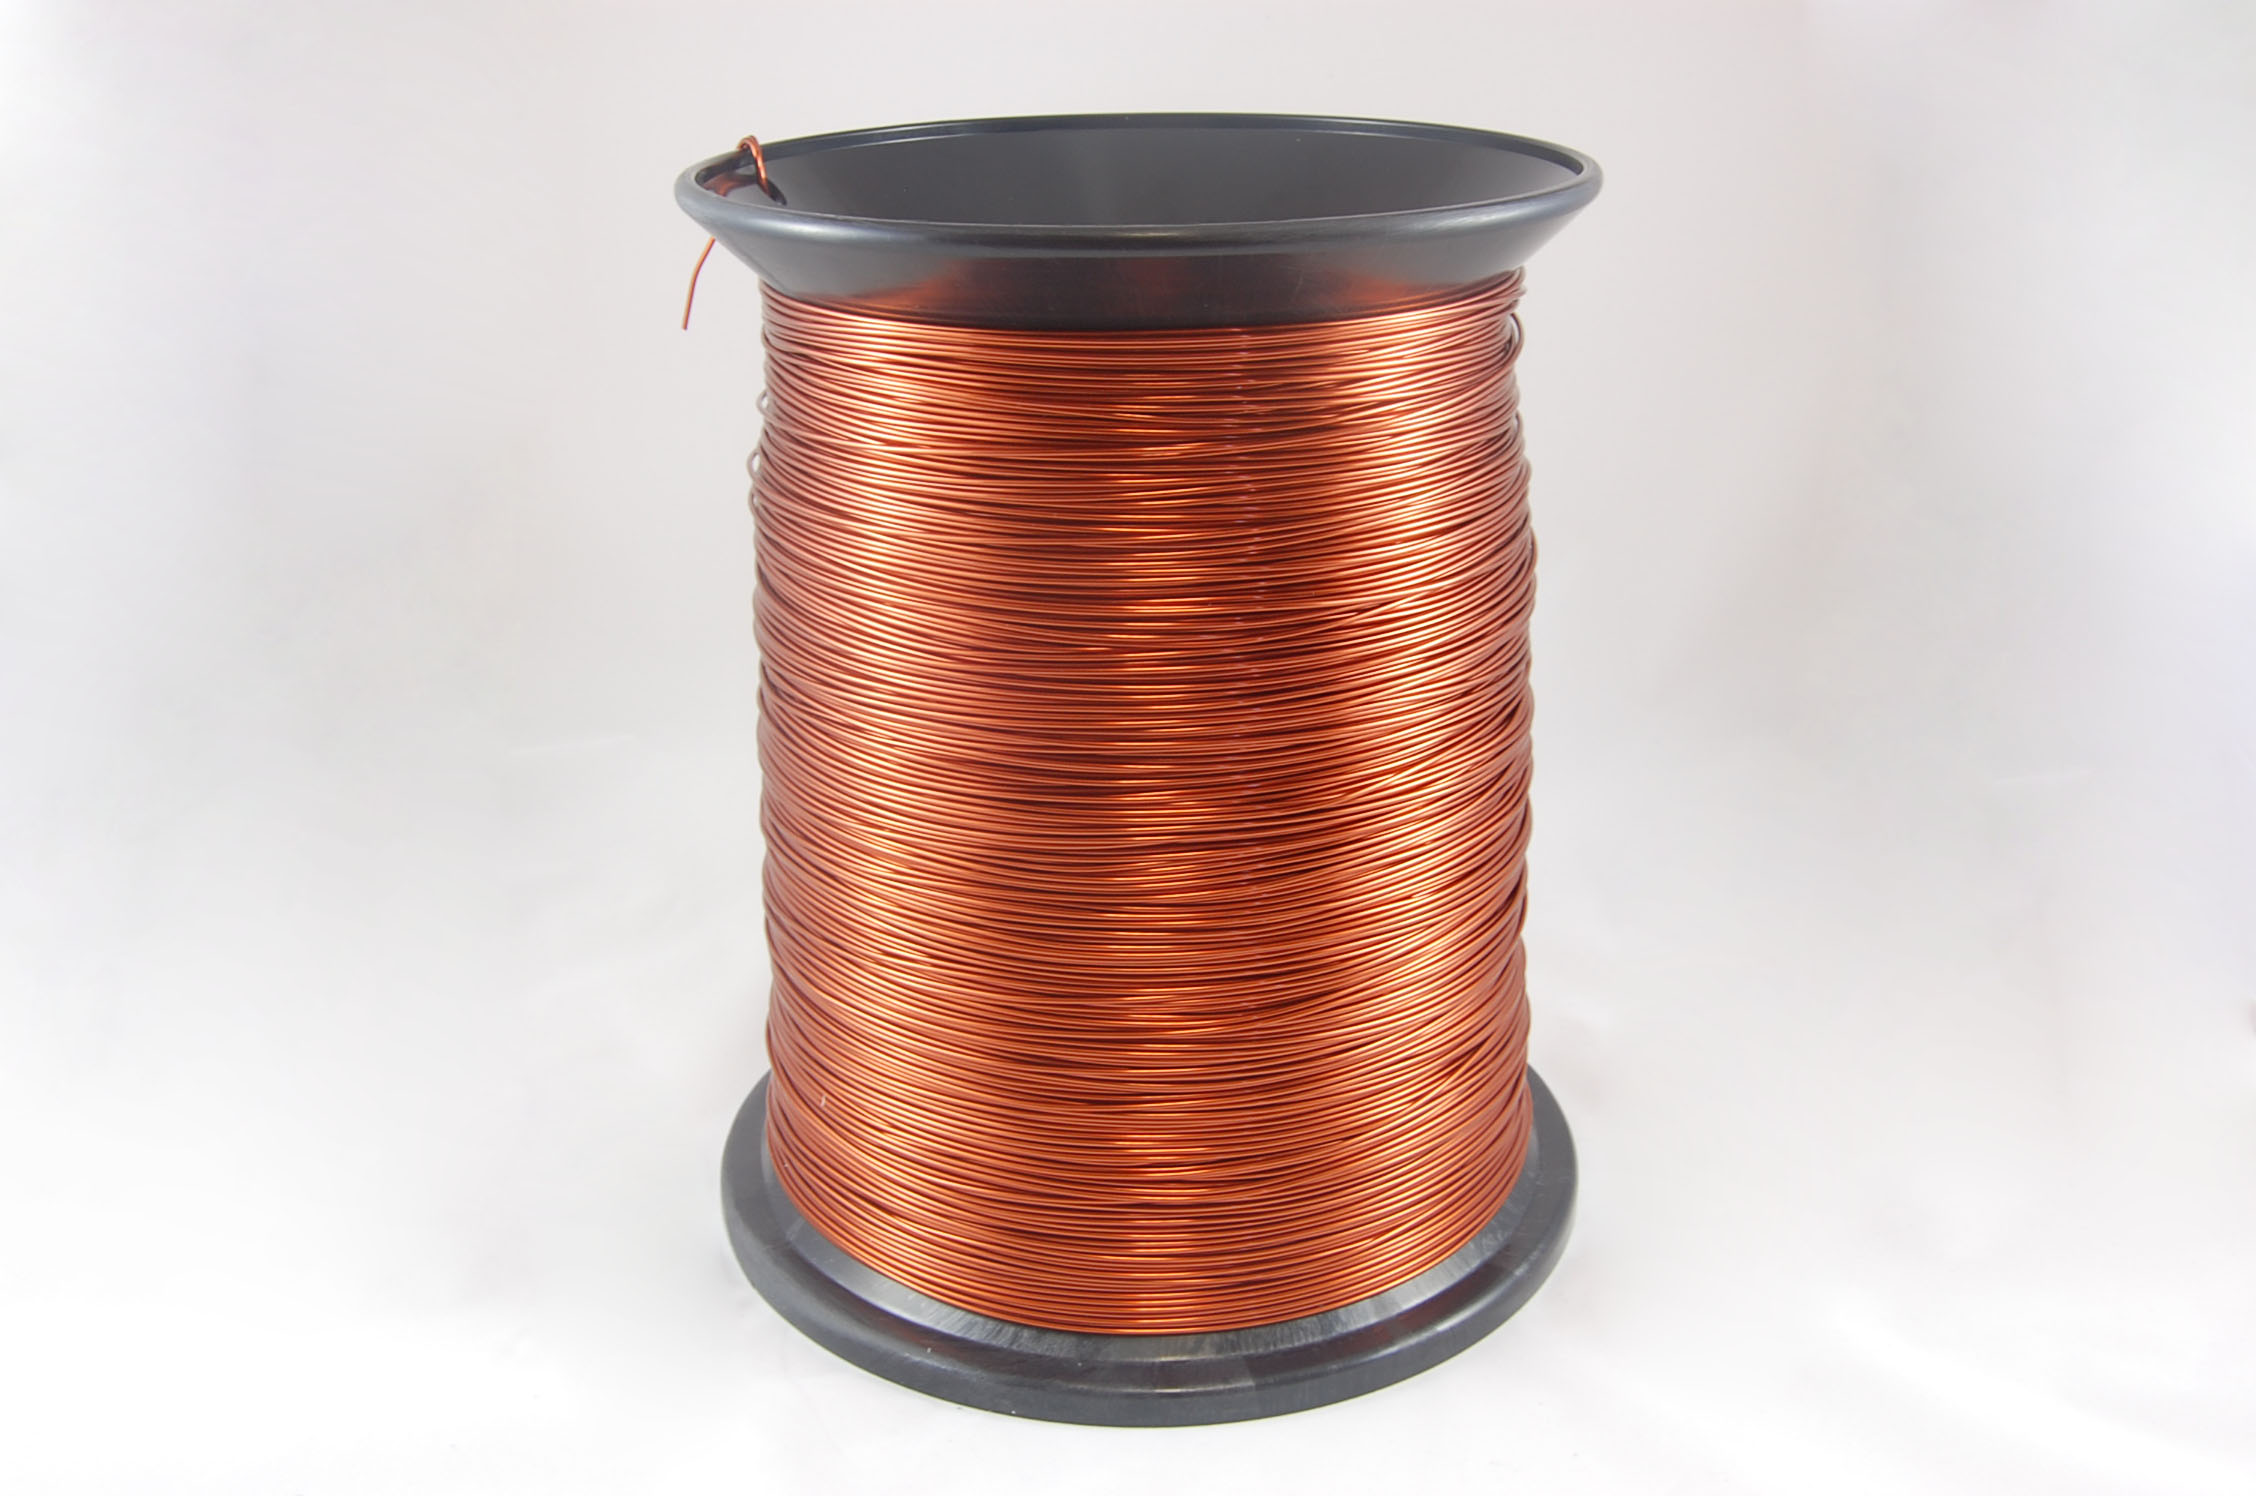 #15 Single GP/MR-200 Round MW 35 Copper Magnet Wire 200°C, copper, 85 LB box (average wght.)